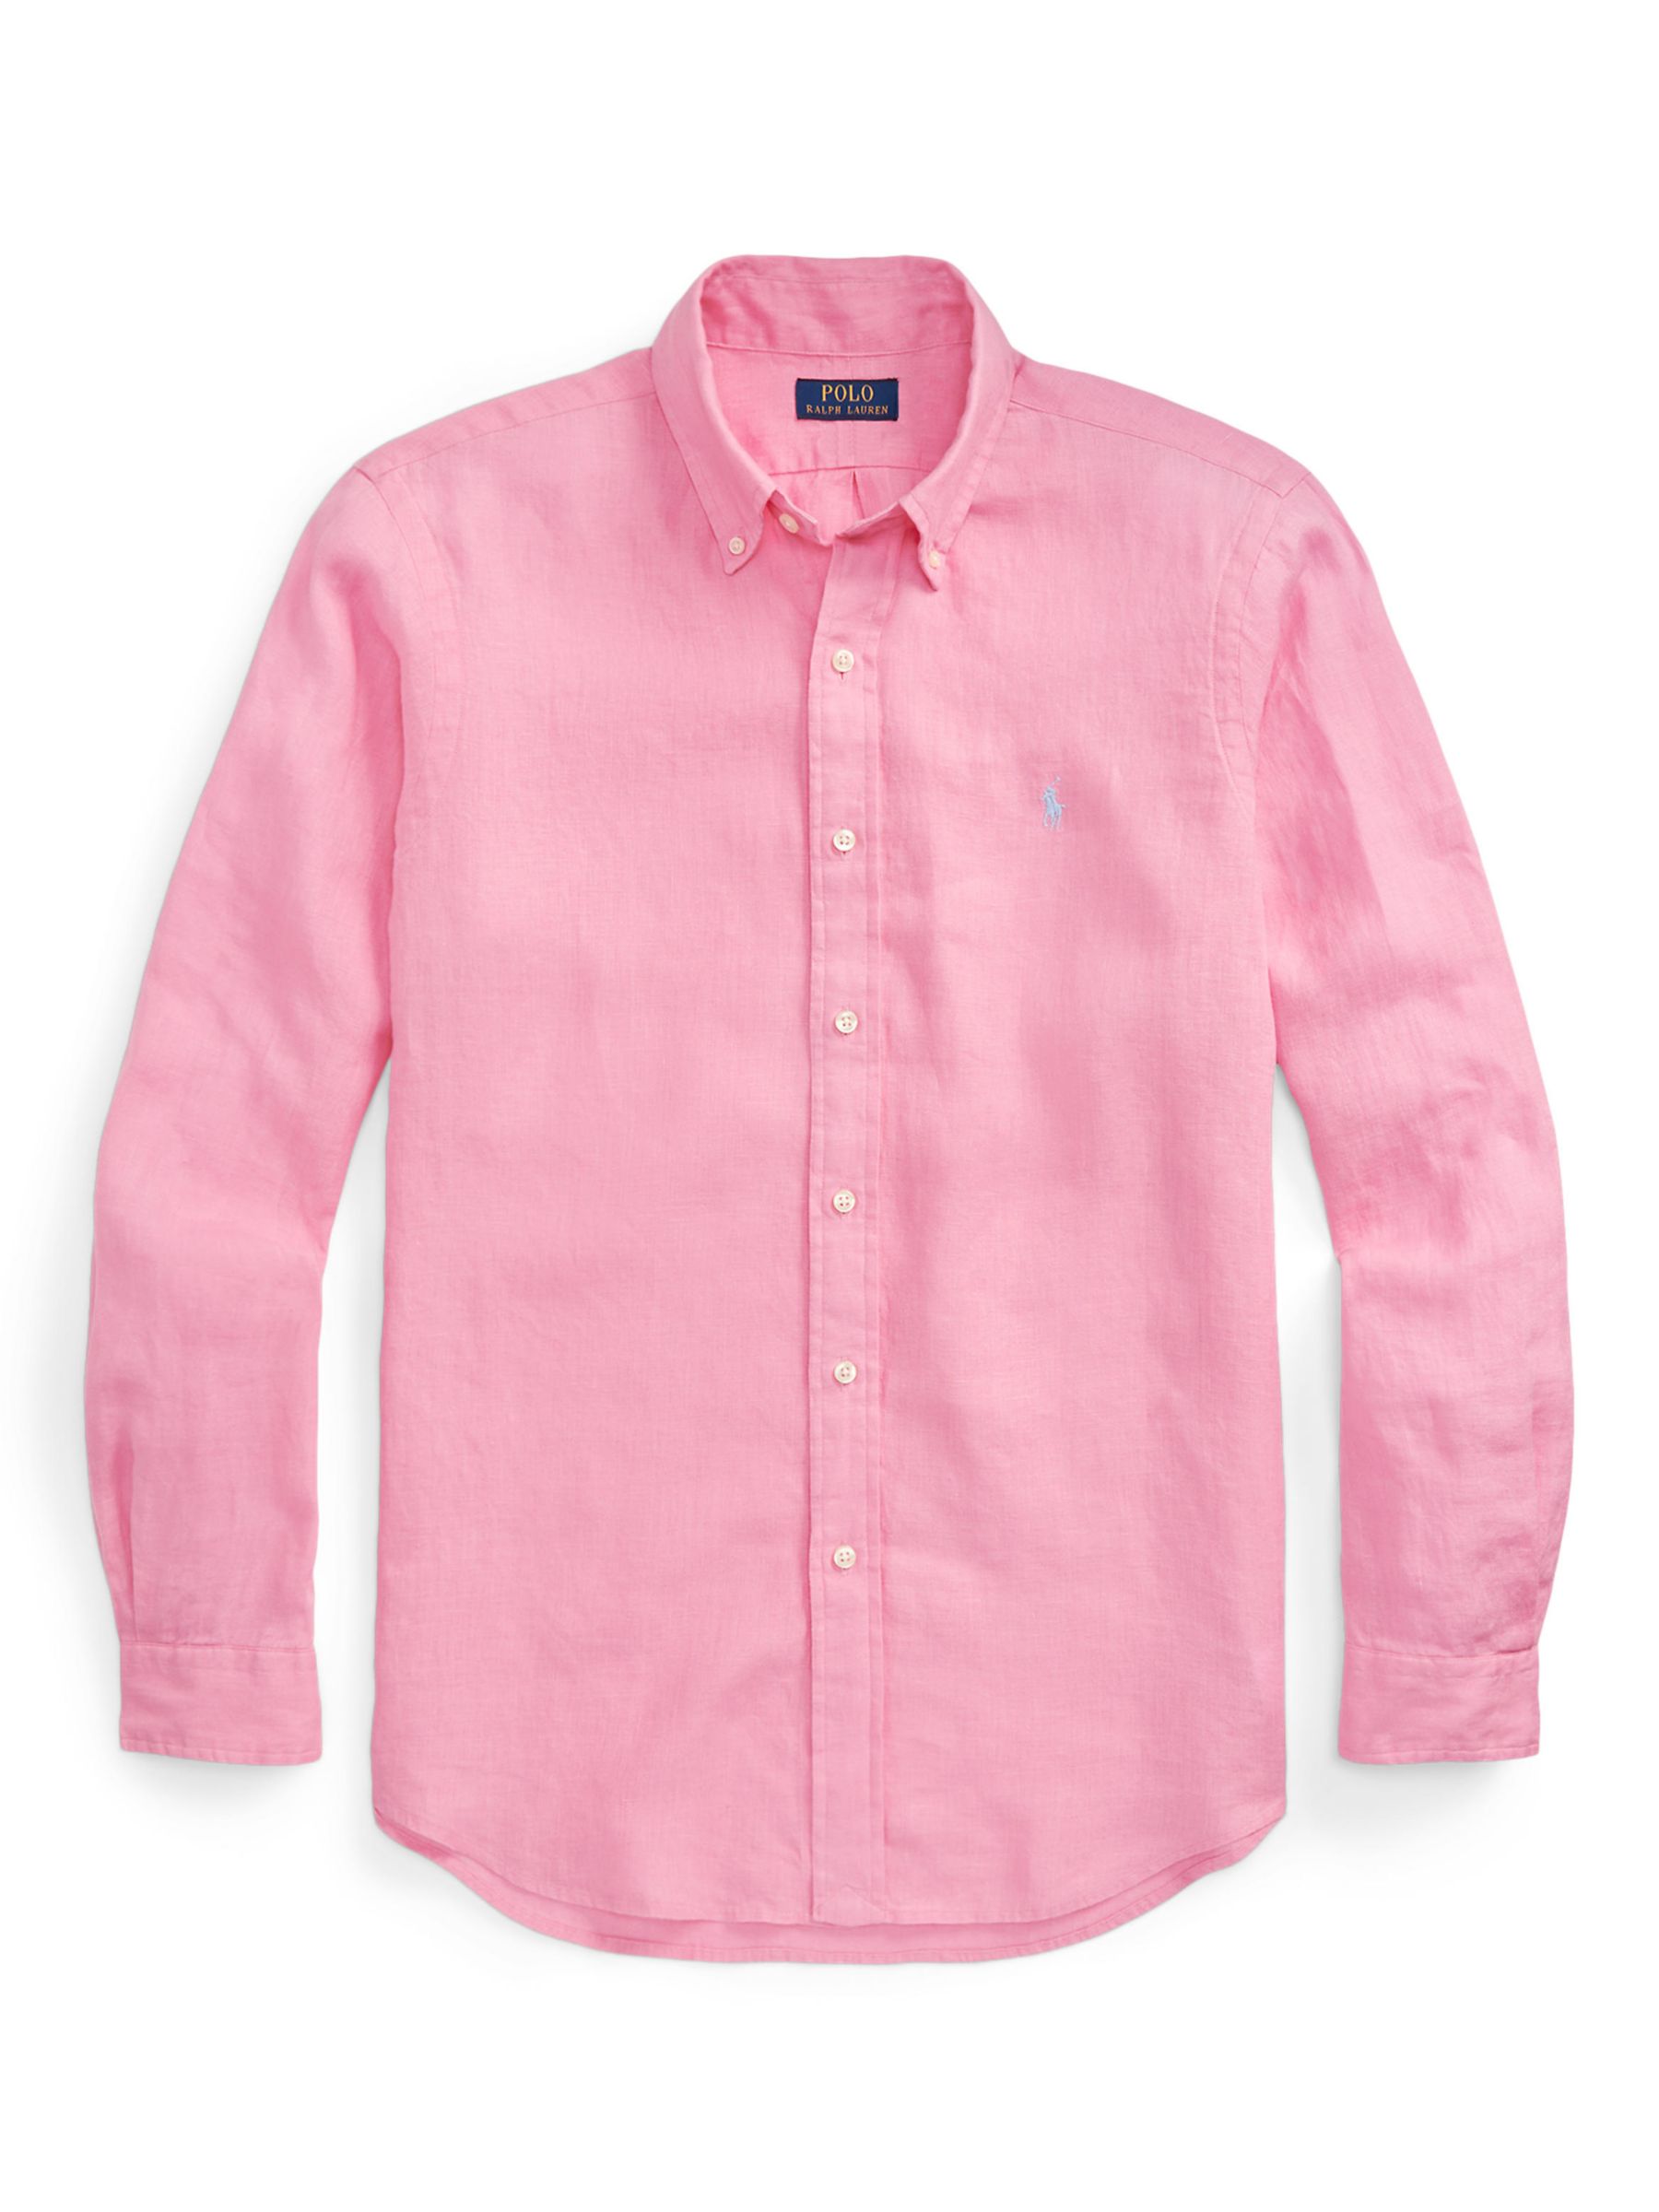 Ralph Lauren Tailored Fit Long Sleeve Linen Shirt, Florida Pink, S